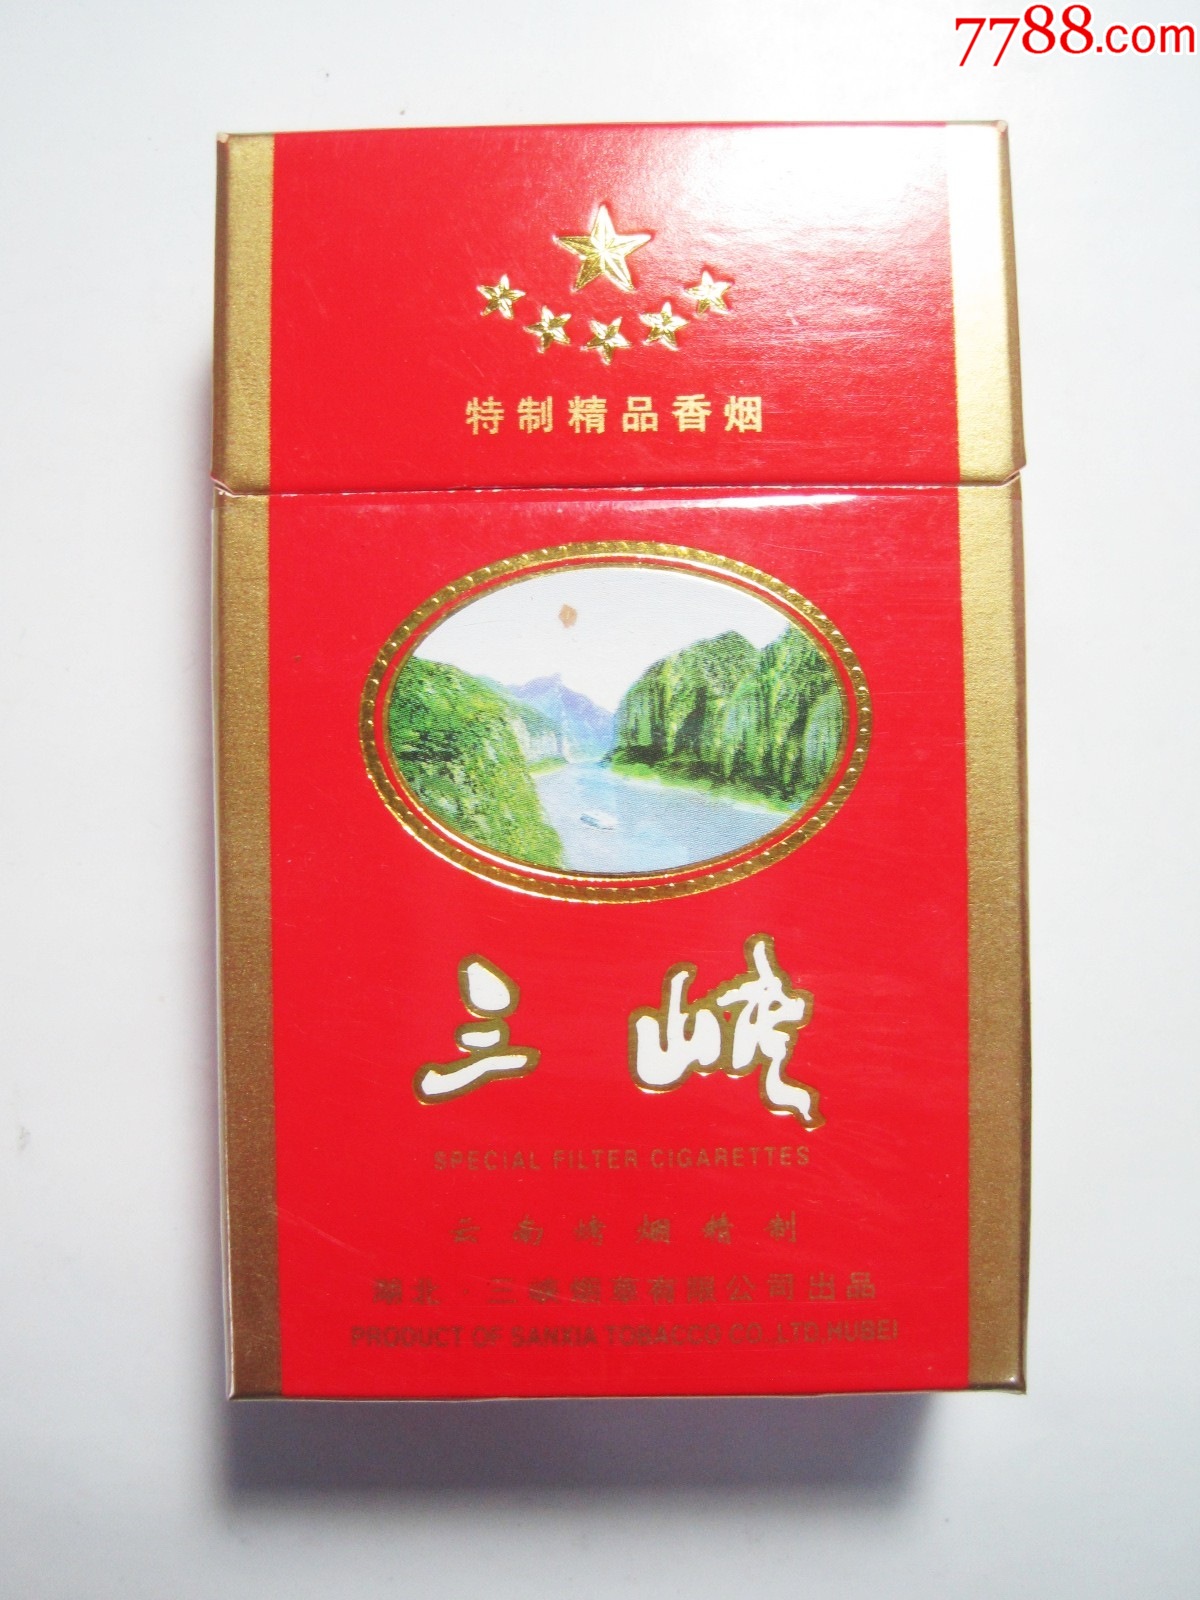 三峡湖北三峡烟草公司3d标空烟盒侧面短警句相对早期